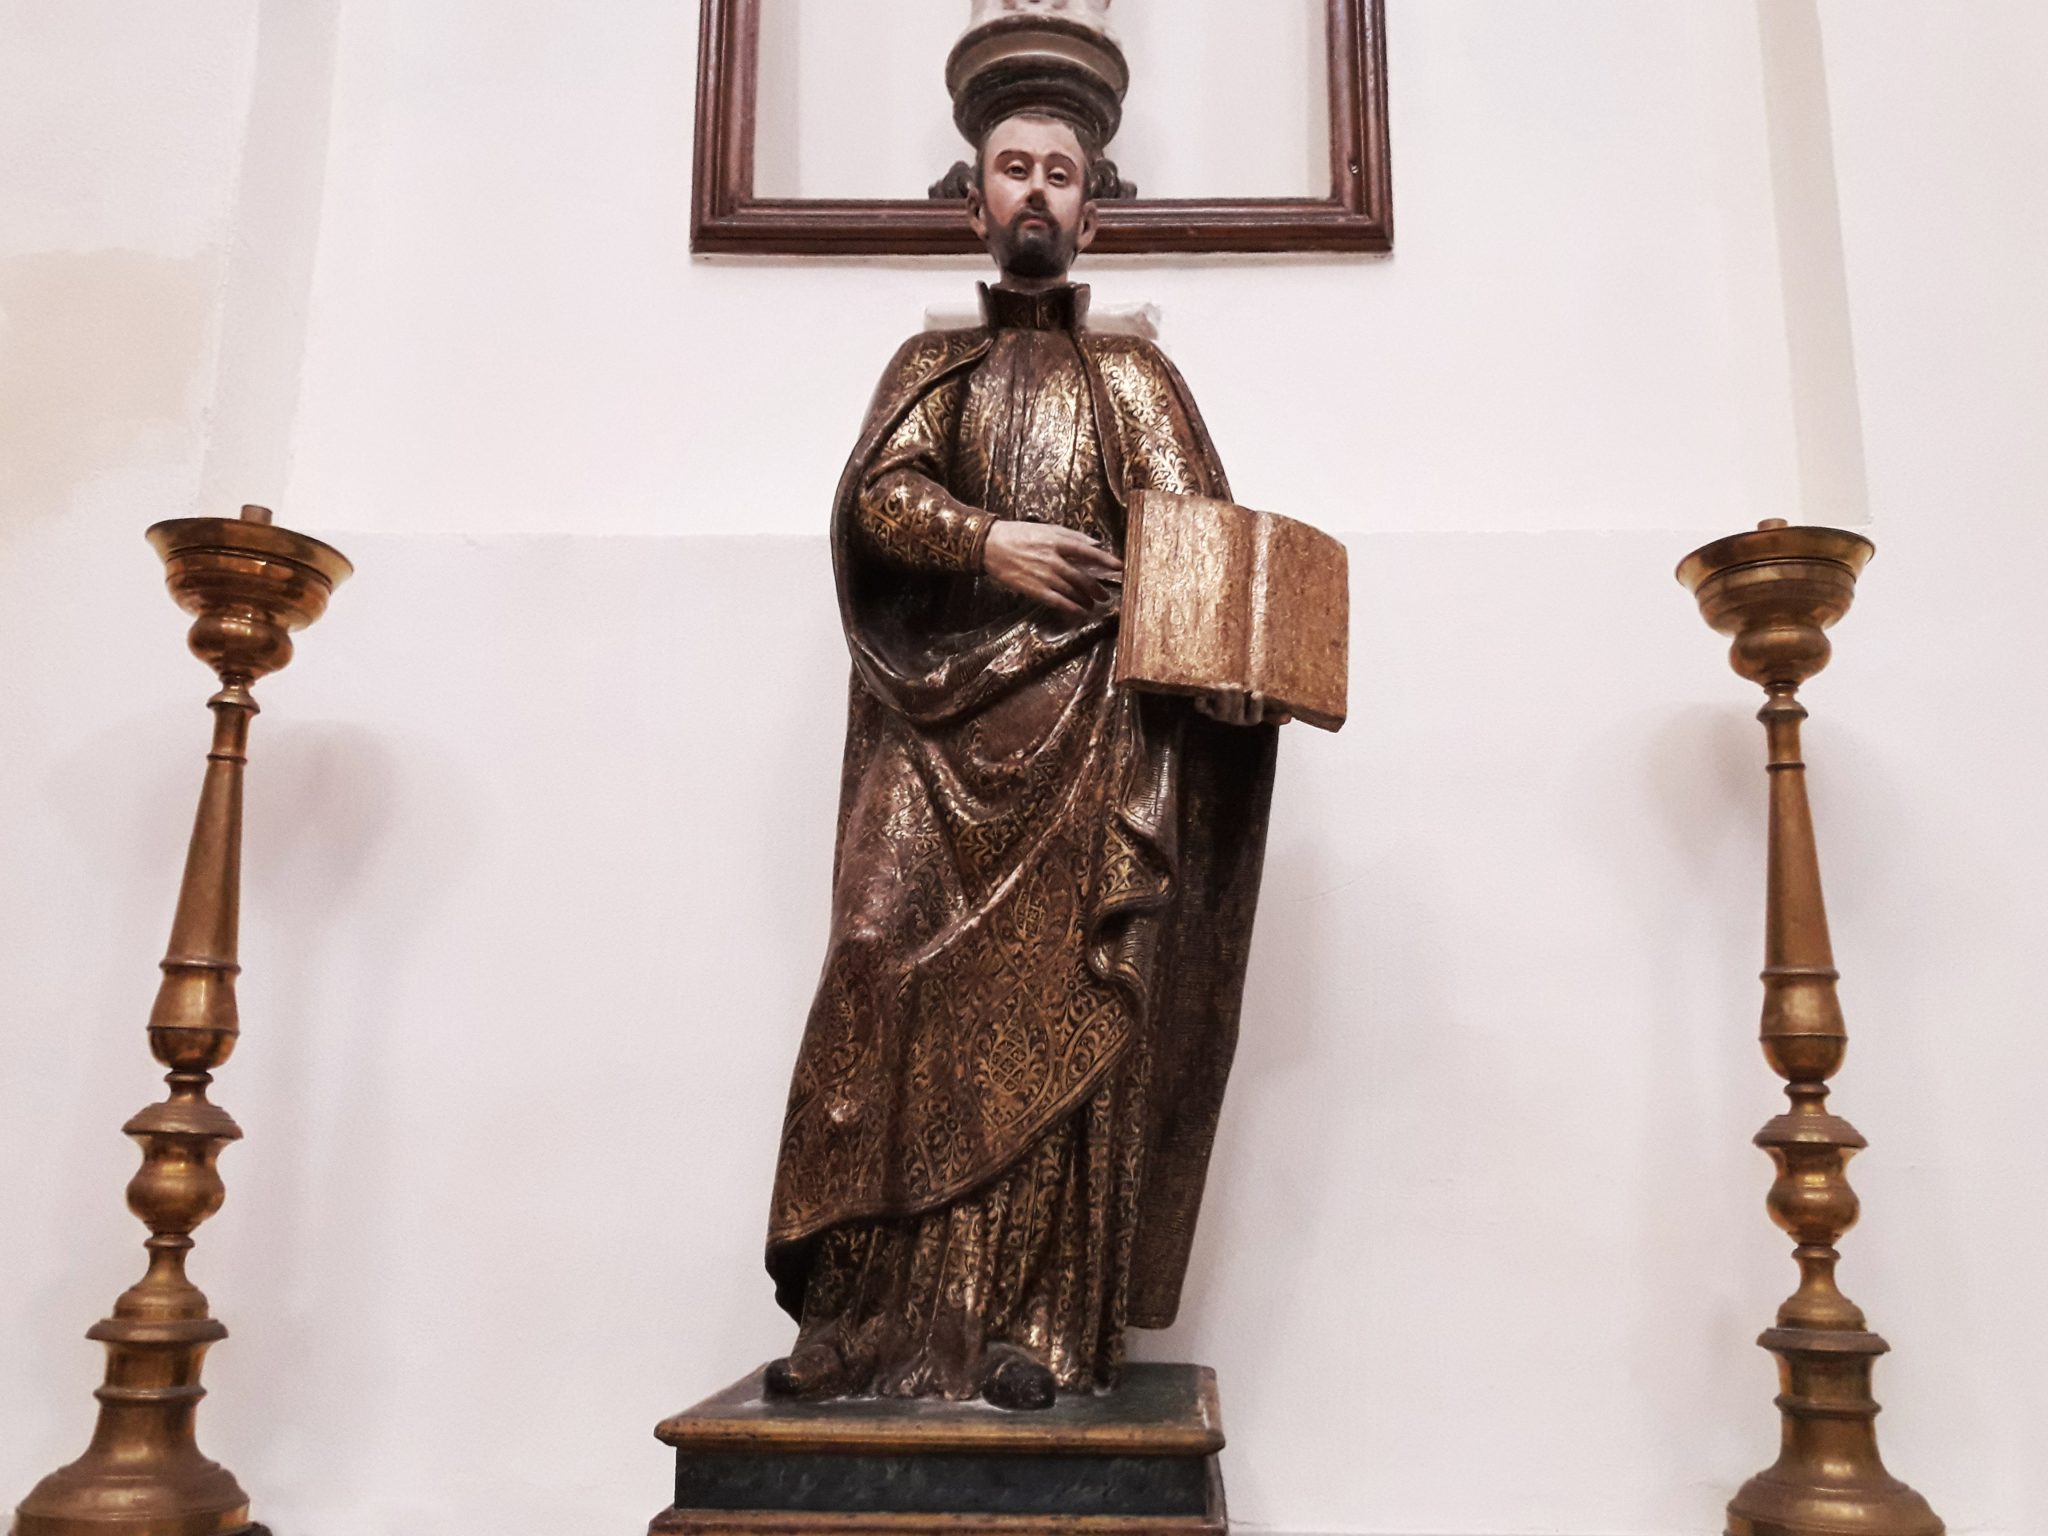 Sant'Ignazio di Loyola, fondatore dei Gesuiti. Statua lignea del XVII sec. nella Chiesa di San Michele.